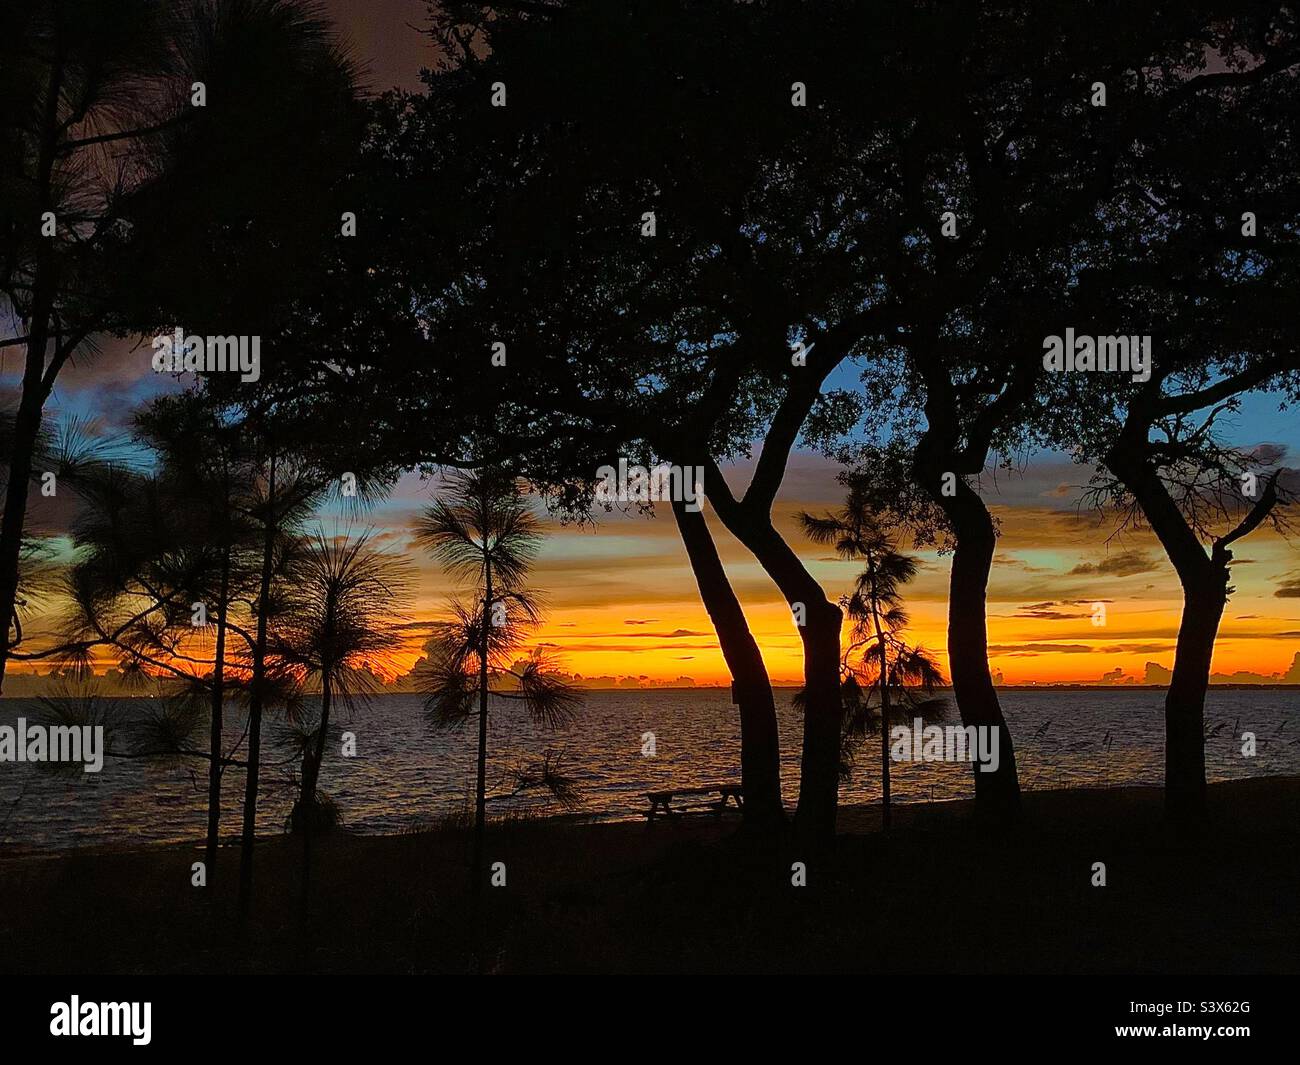 Ein herrlicher Sonnenuntergang im Florida Panhandle. Auf dem Hintergrund die hellen Farben eines Spätsommeruntergangs, die leuchtenden Farben von goldenem Orange, Bernstein, Gelb. Verbessert durch die Silhouette von Bäumen. Stockfoto